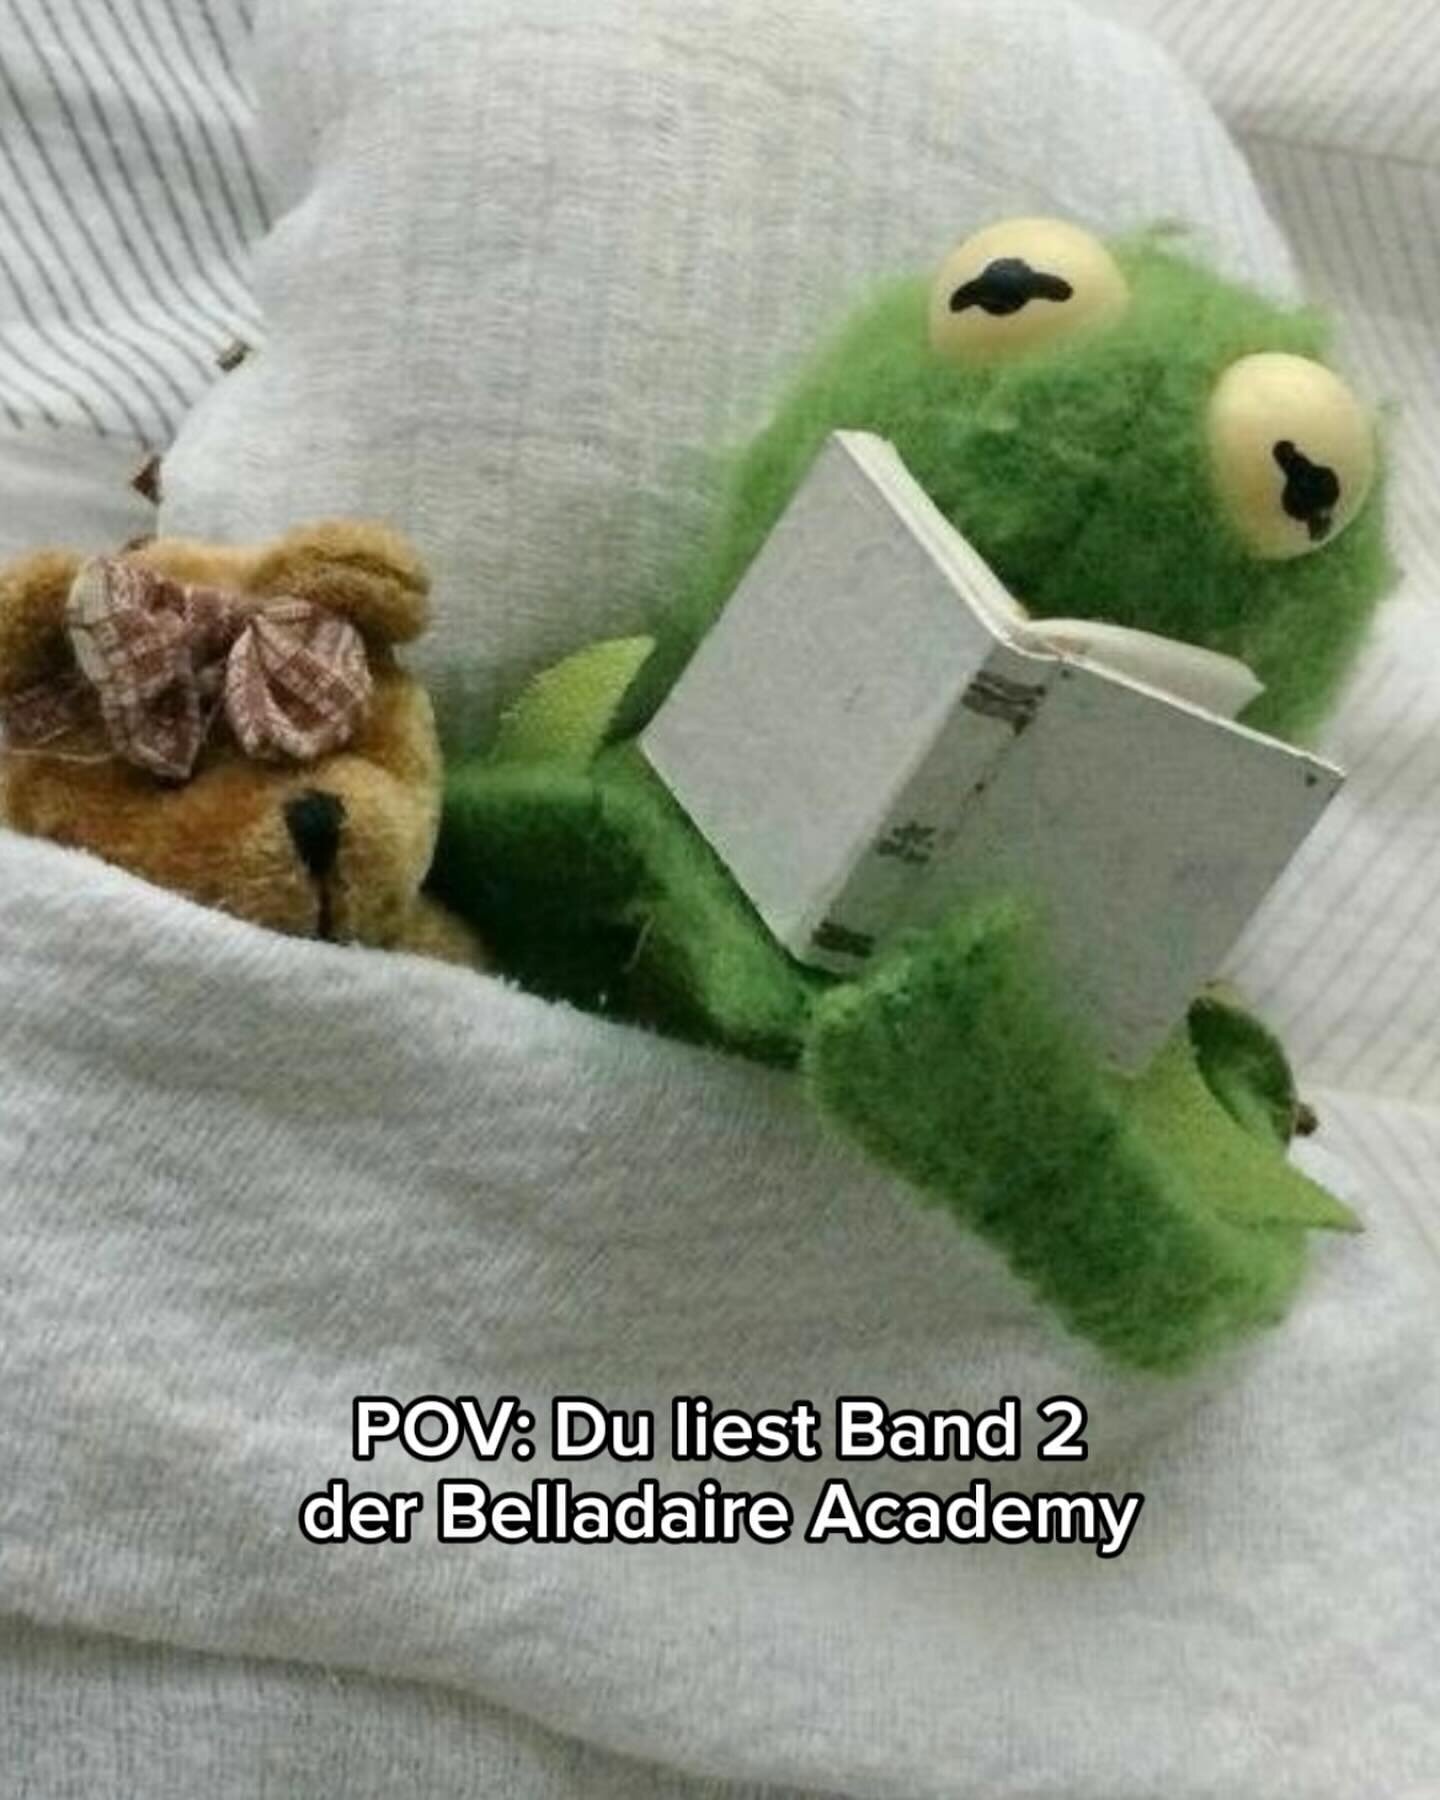 Nachdem ihr die Katzen Memes so mochtet, hat mein Buddy Kermit &bdquo;Rivals&ldquo; jetzt auch gelesen 🐸 schaut selbst, was er dabei ✨gef&uuml;hlt✨ hat hihi und haltet die Augen offen, Teil 2 folgt! 🌝😂🩵

#belladaireacademy #belladaireacademyofath